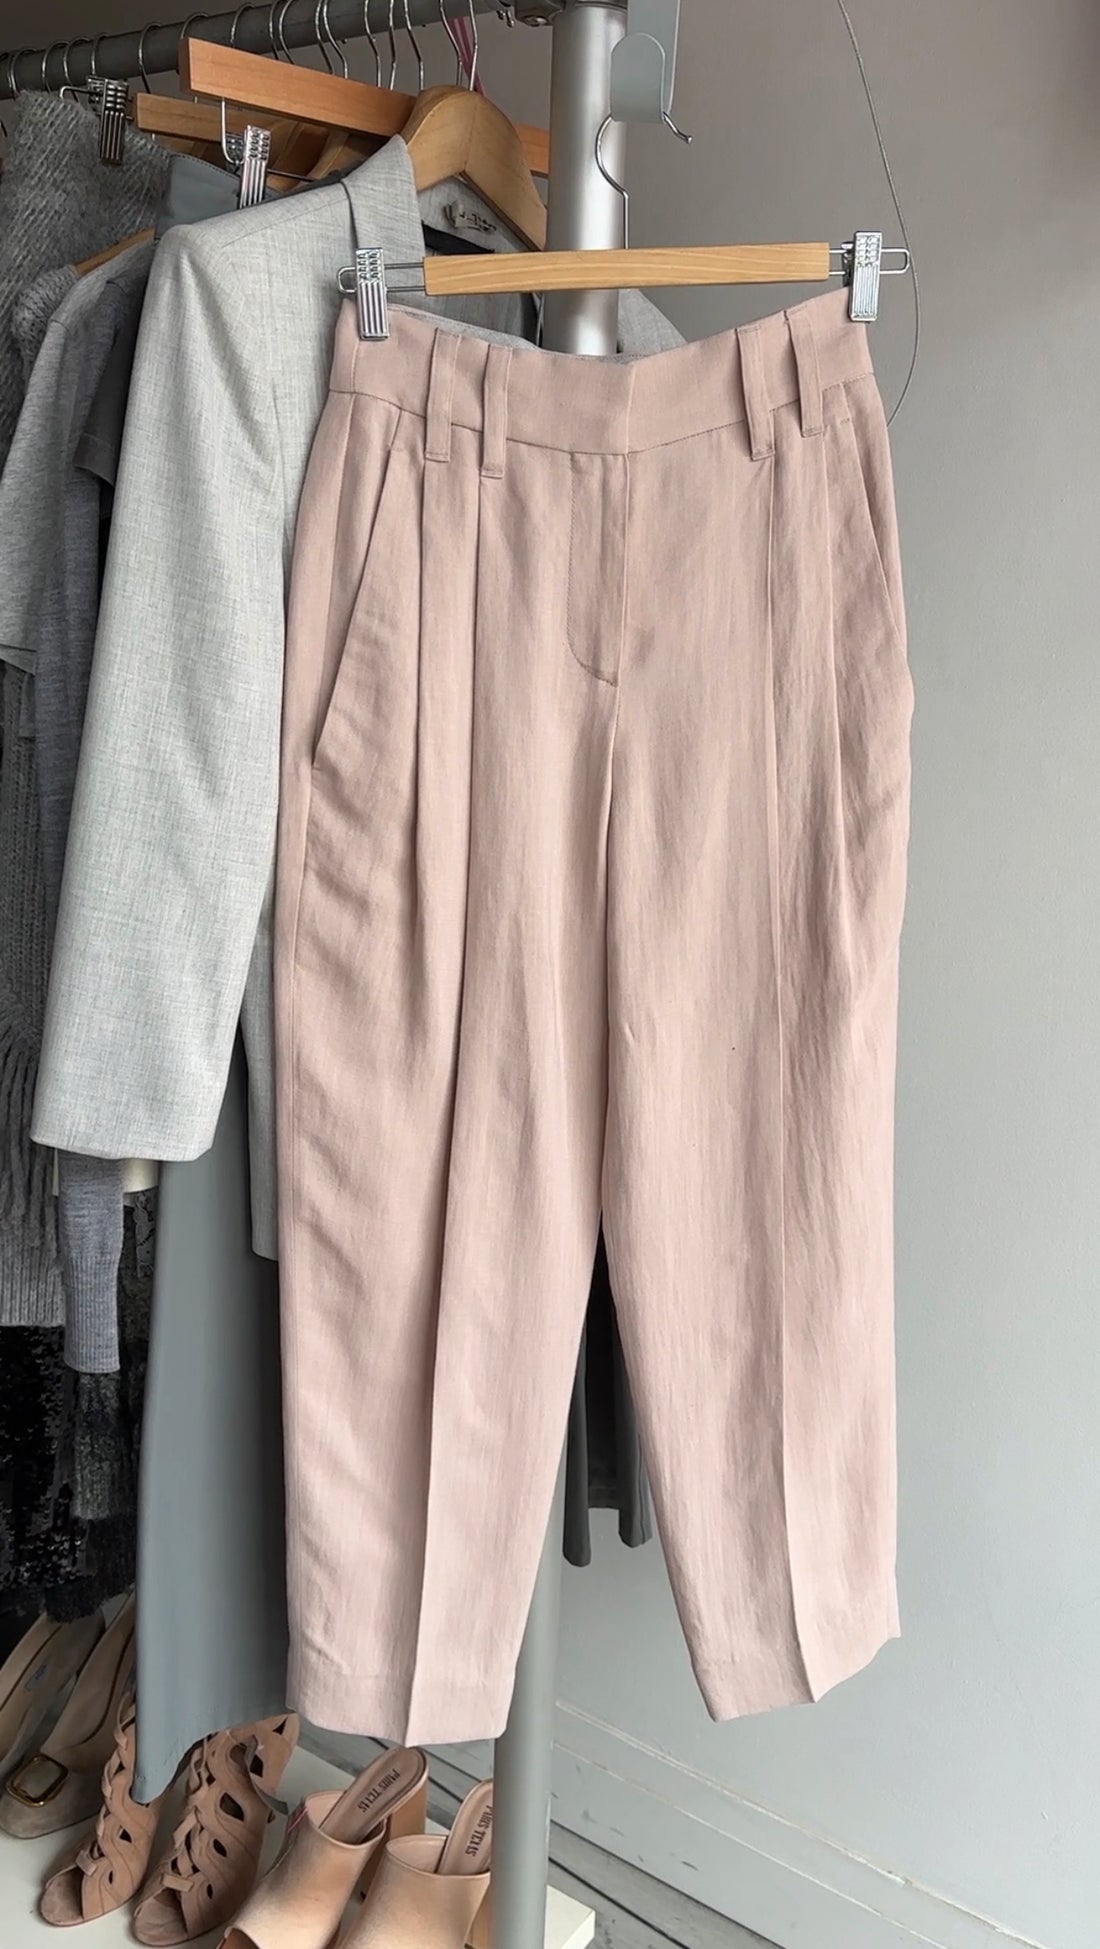 Brunello Cucinelli Light Shell Pink Linen Pants - IT36 / FR32 / USA0